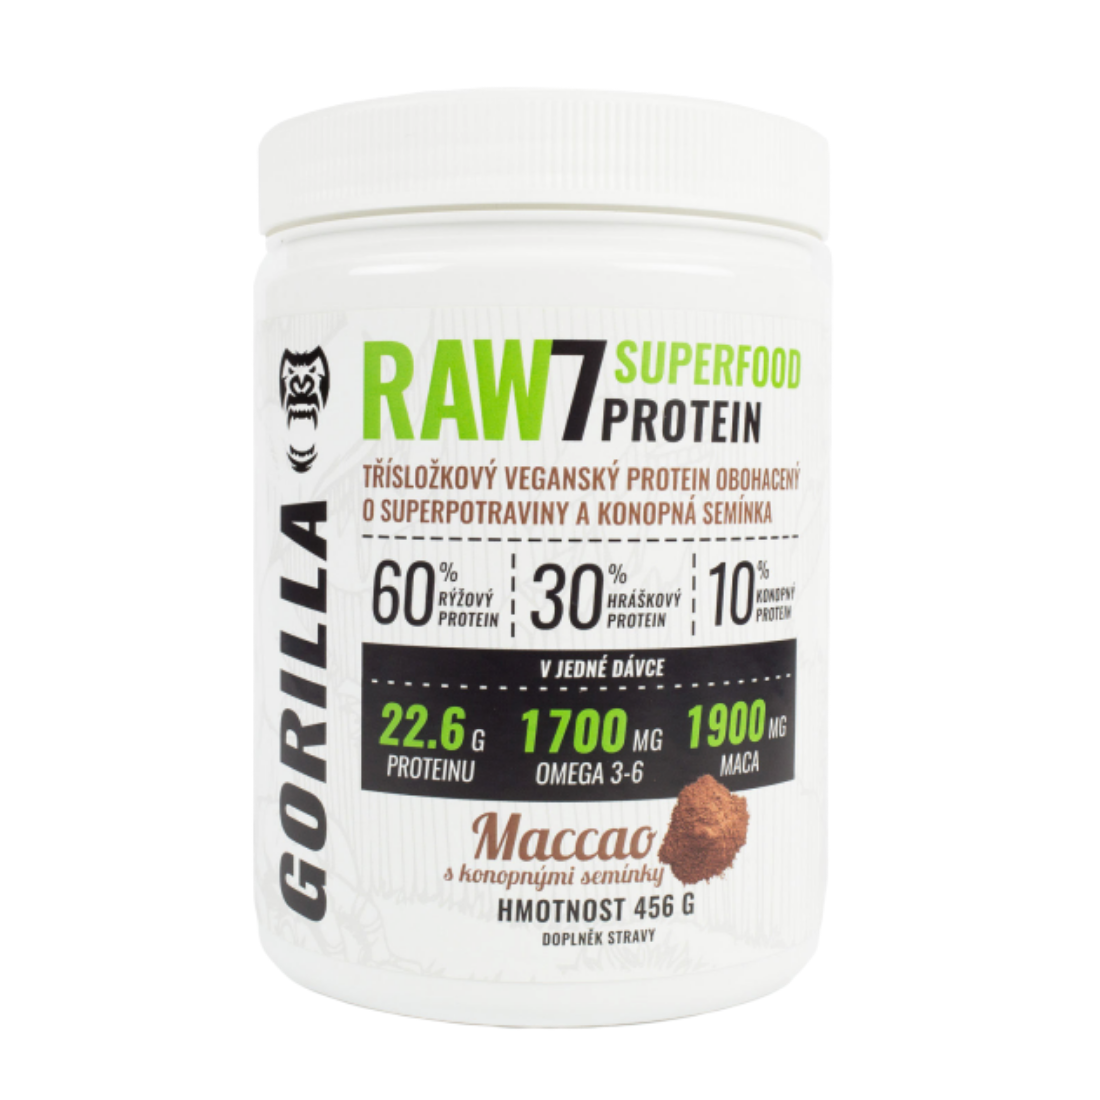 RAW7 SuperFood Protein 456 g - rostlinný protein